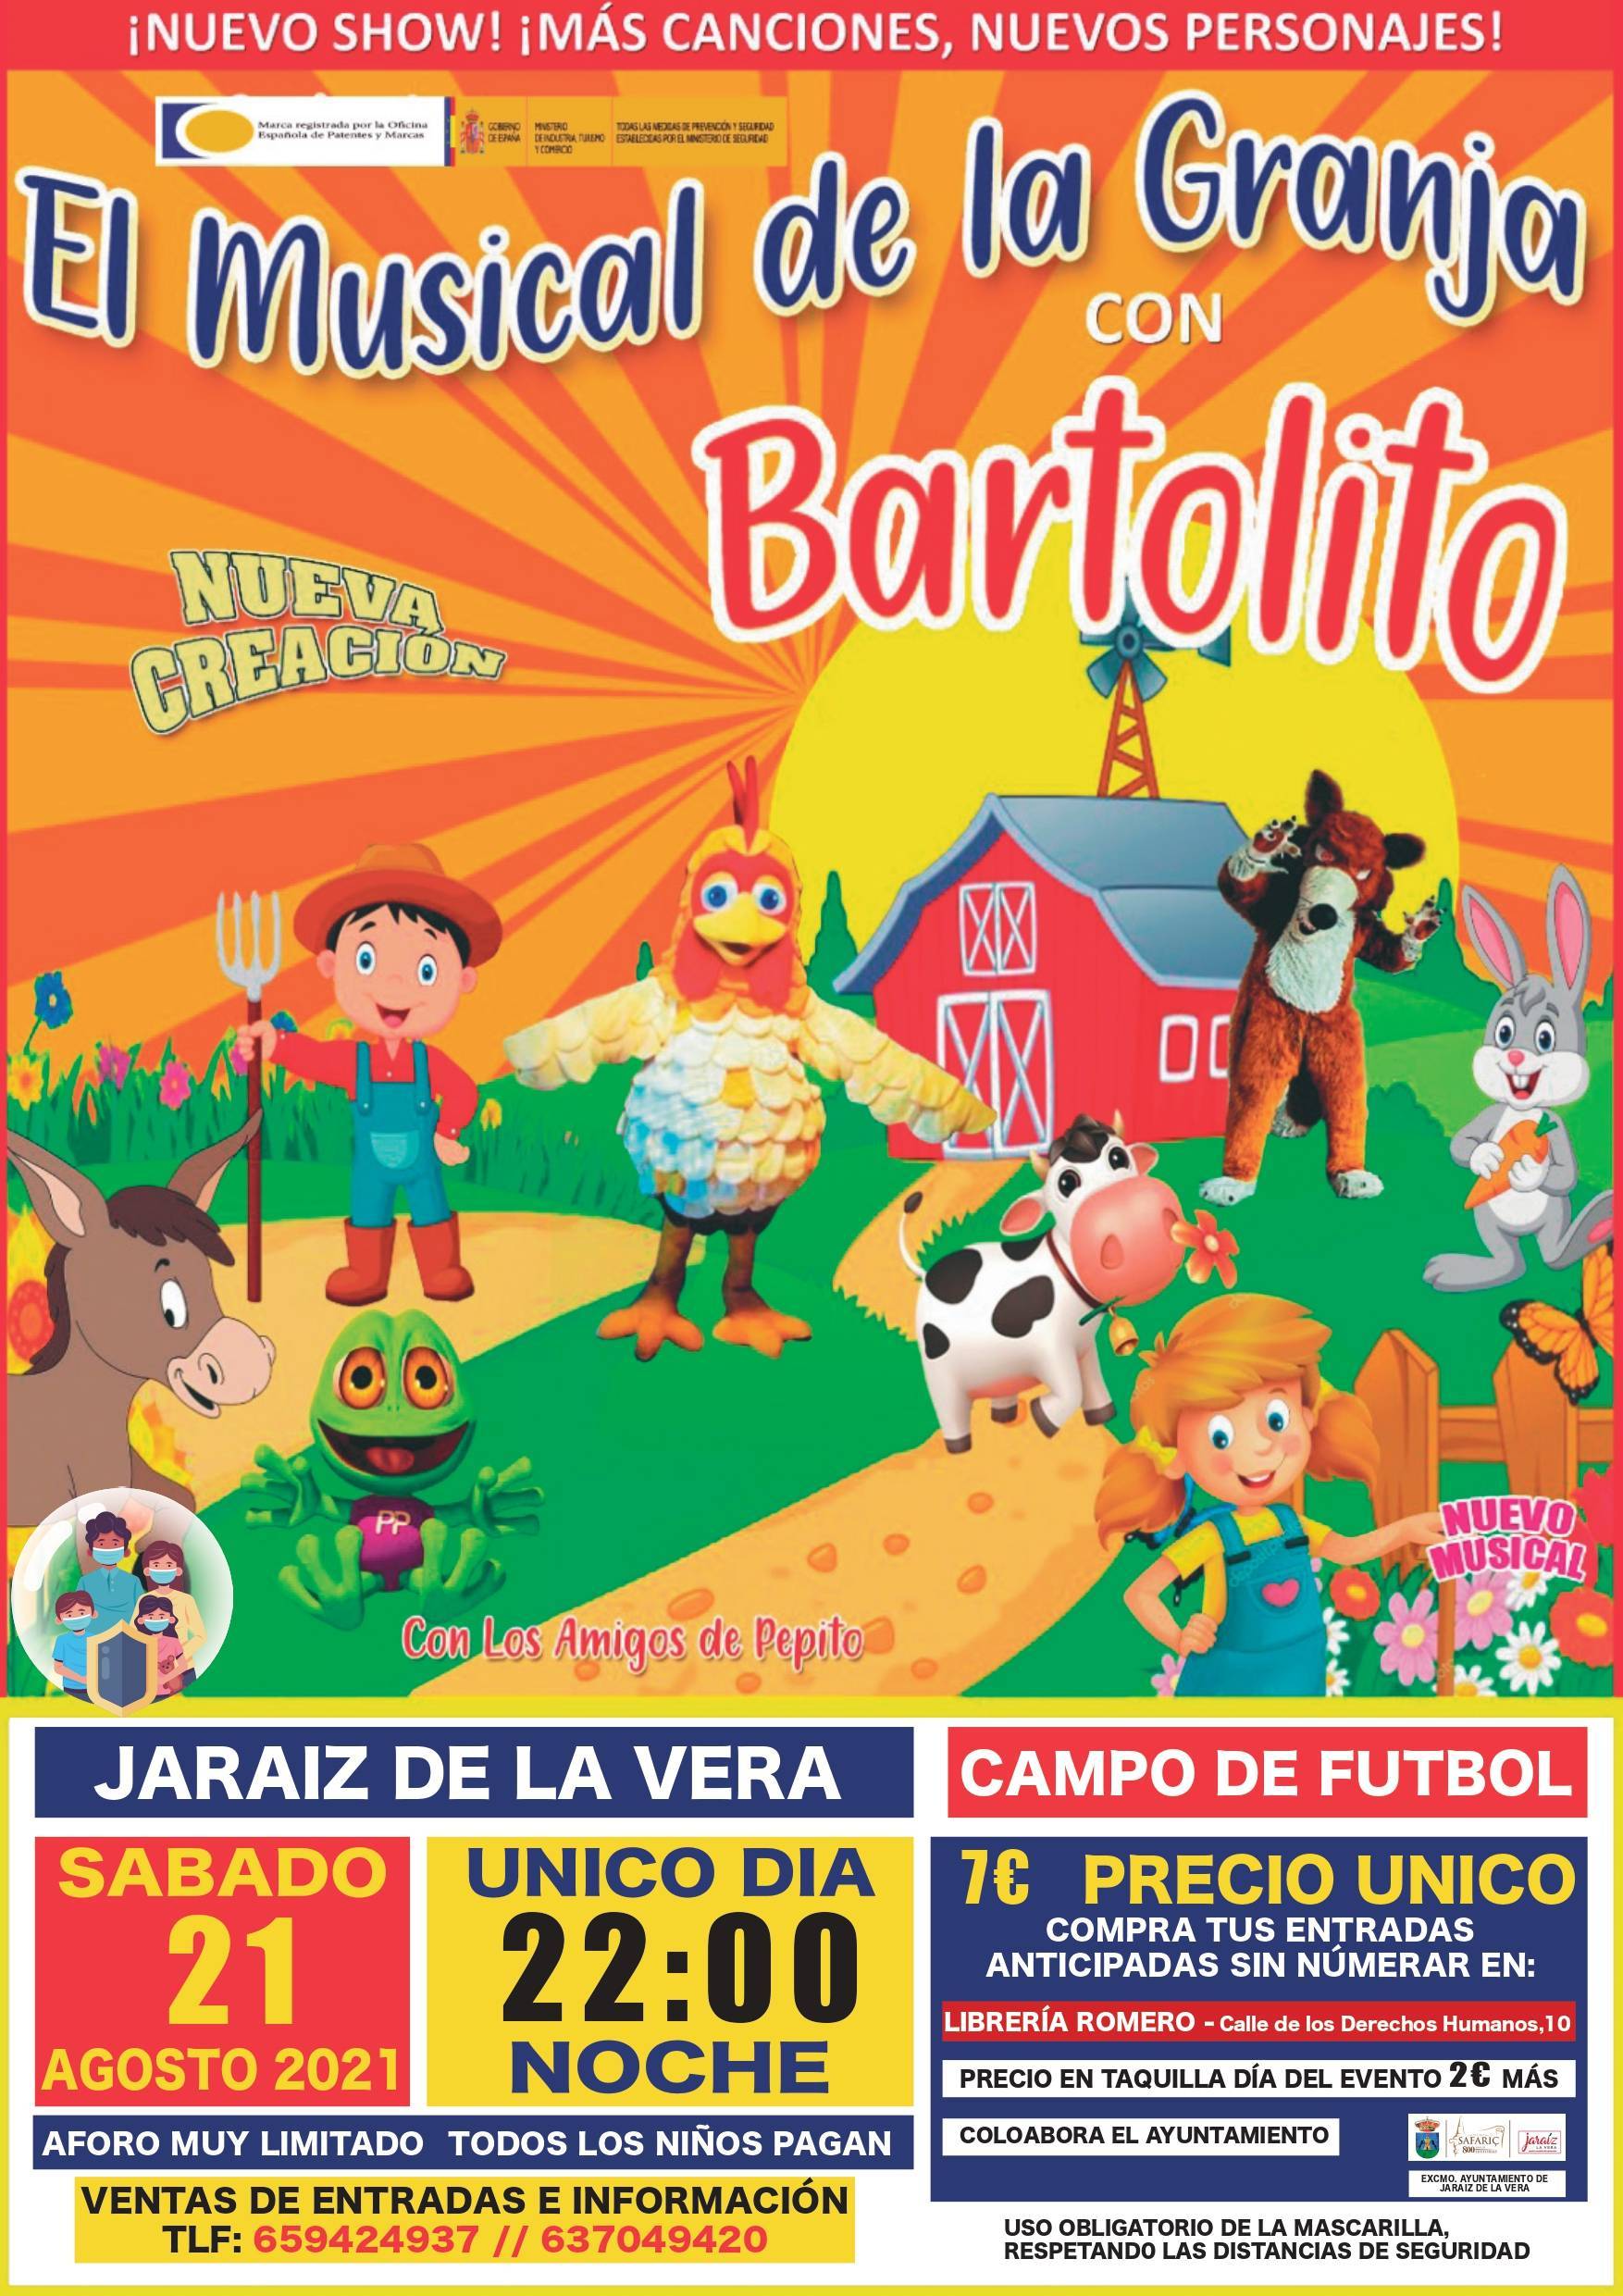 'El musical de la granja con Bartolito' (2021) - Jaraíz de la Vera (Cáceres)